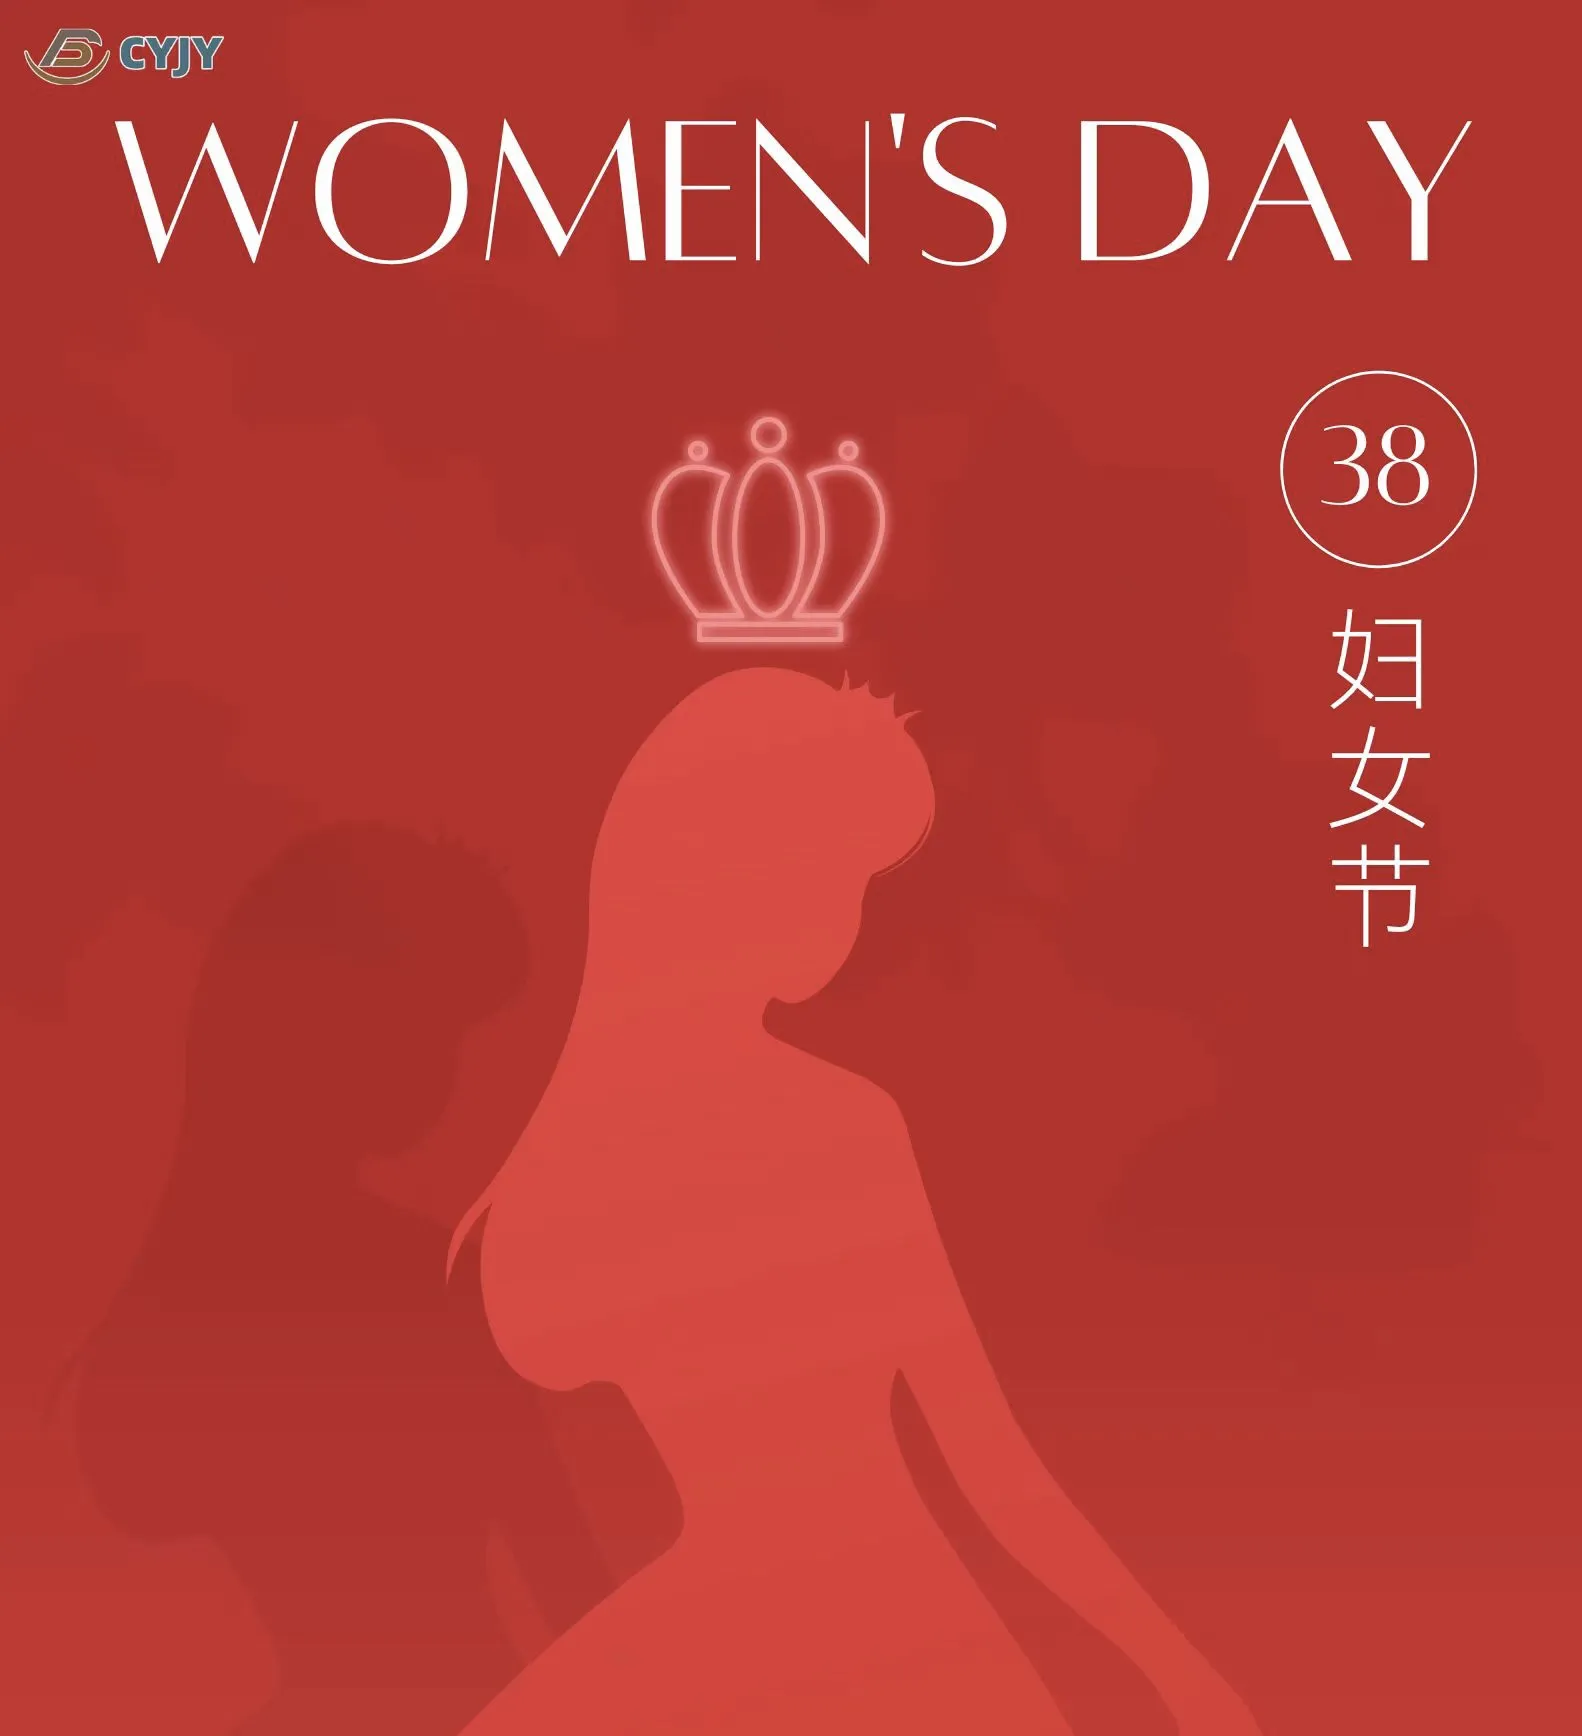 अंतर्राष्ट्रीय कामकाजी महिला दिवस की शुभकामनाएँ